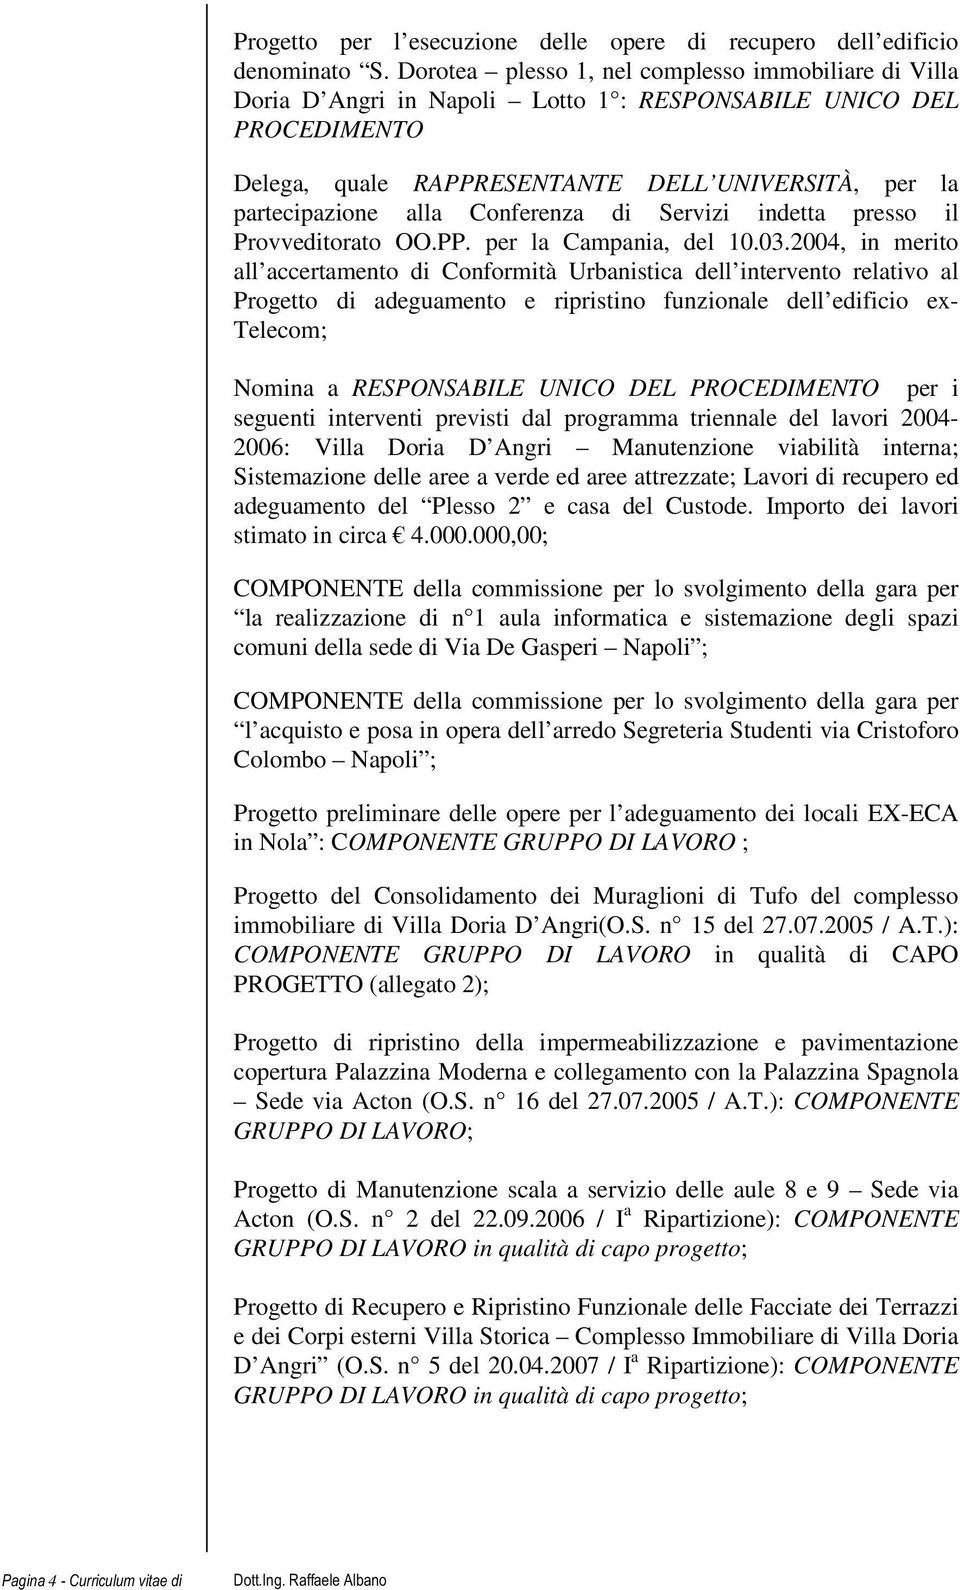 Conferenza di Servizi indetta presso il Provveditorato OO.PP. per la Campania, del 10.03.